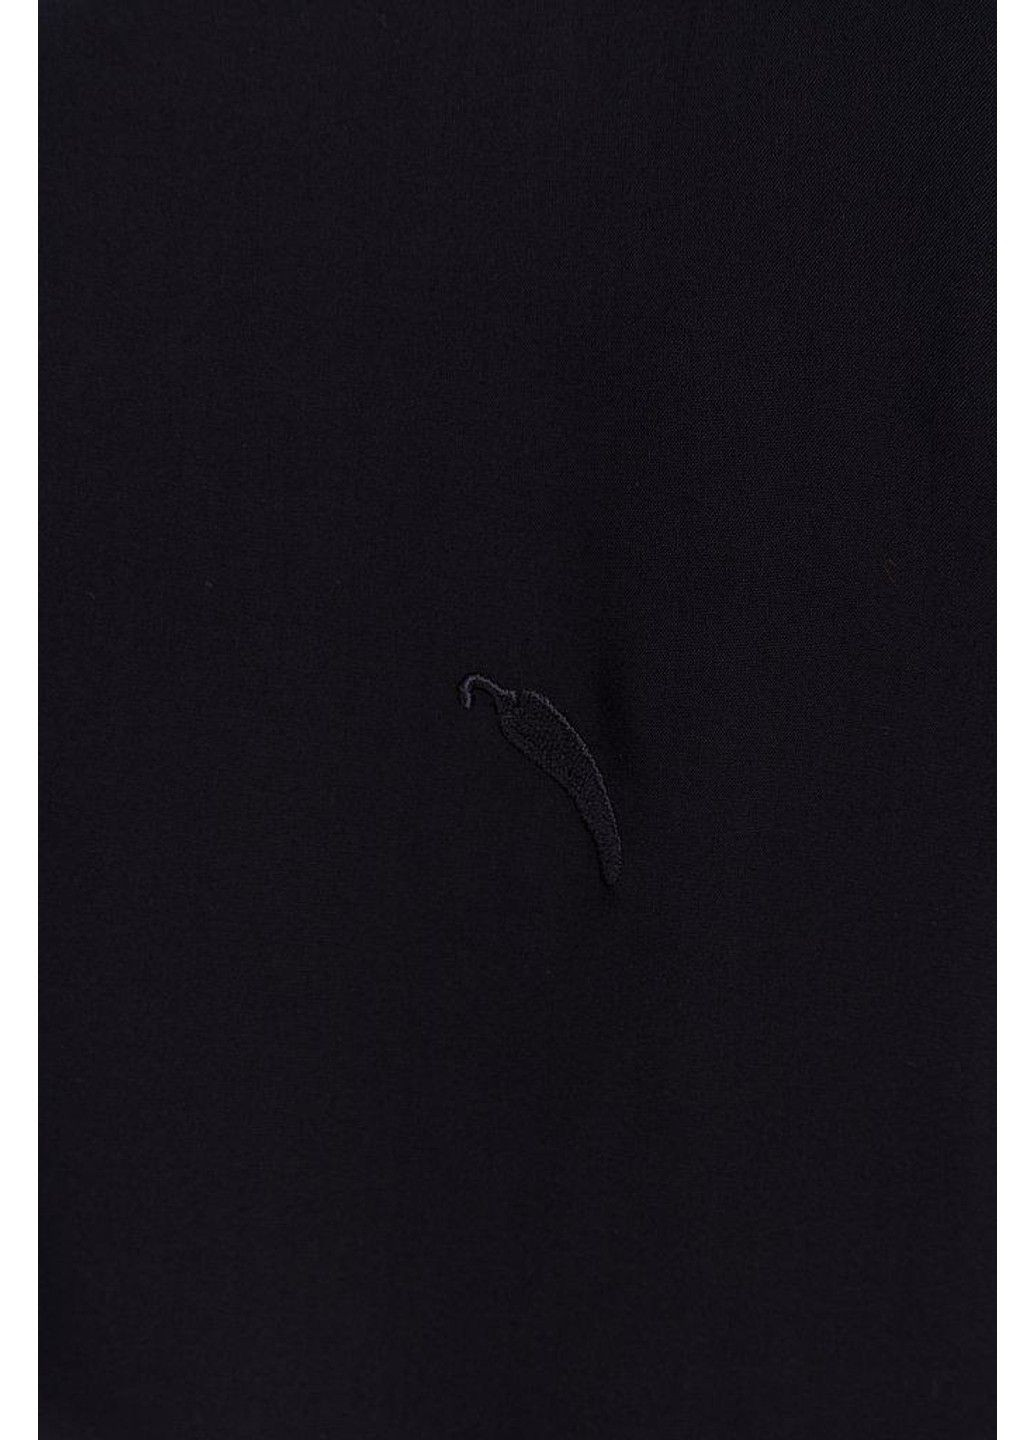 Темно-синяя летняя блузка s19-12070-101 Finn Flare